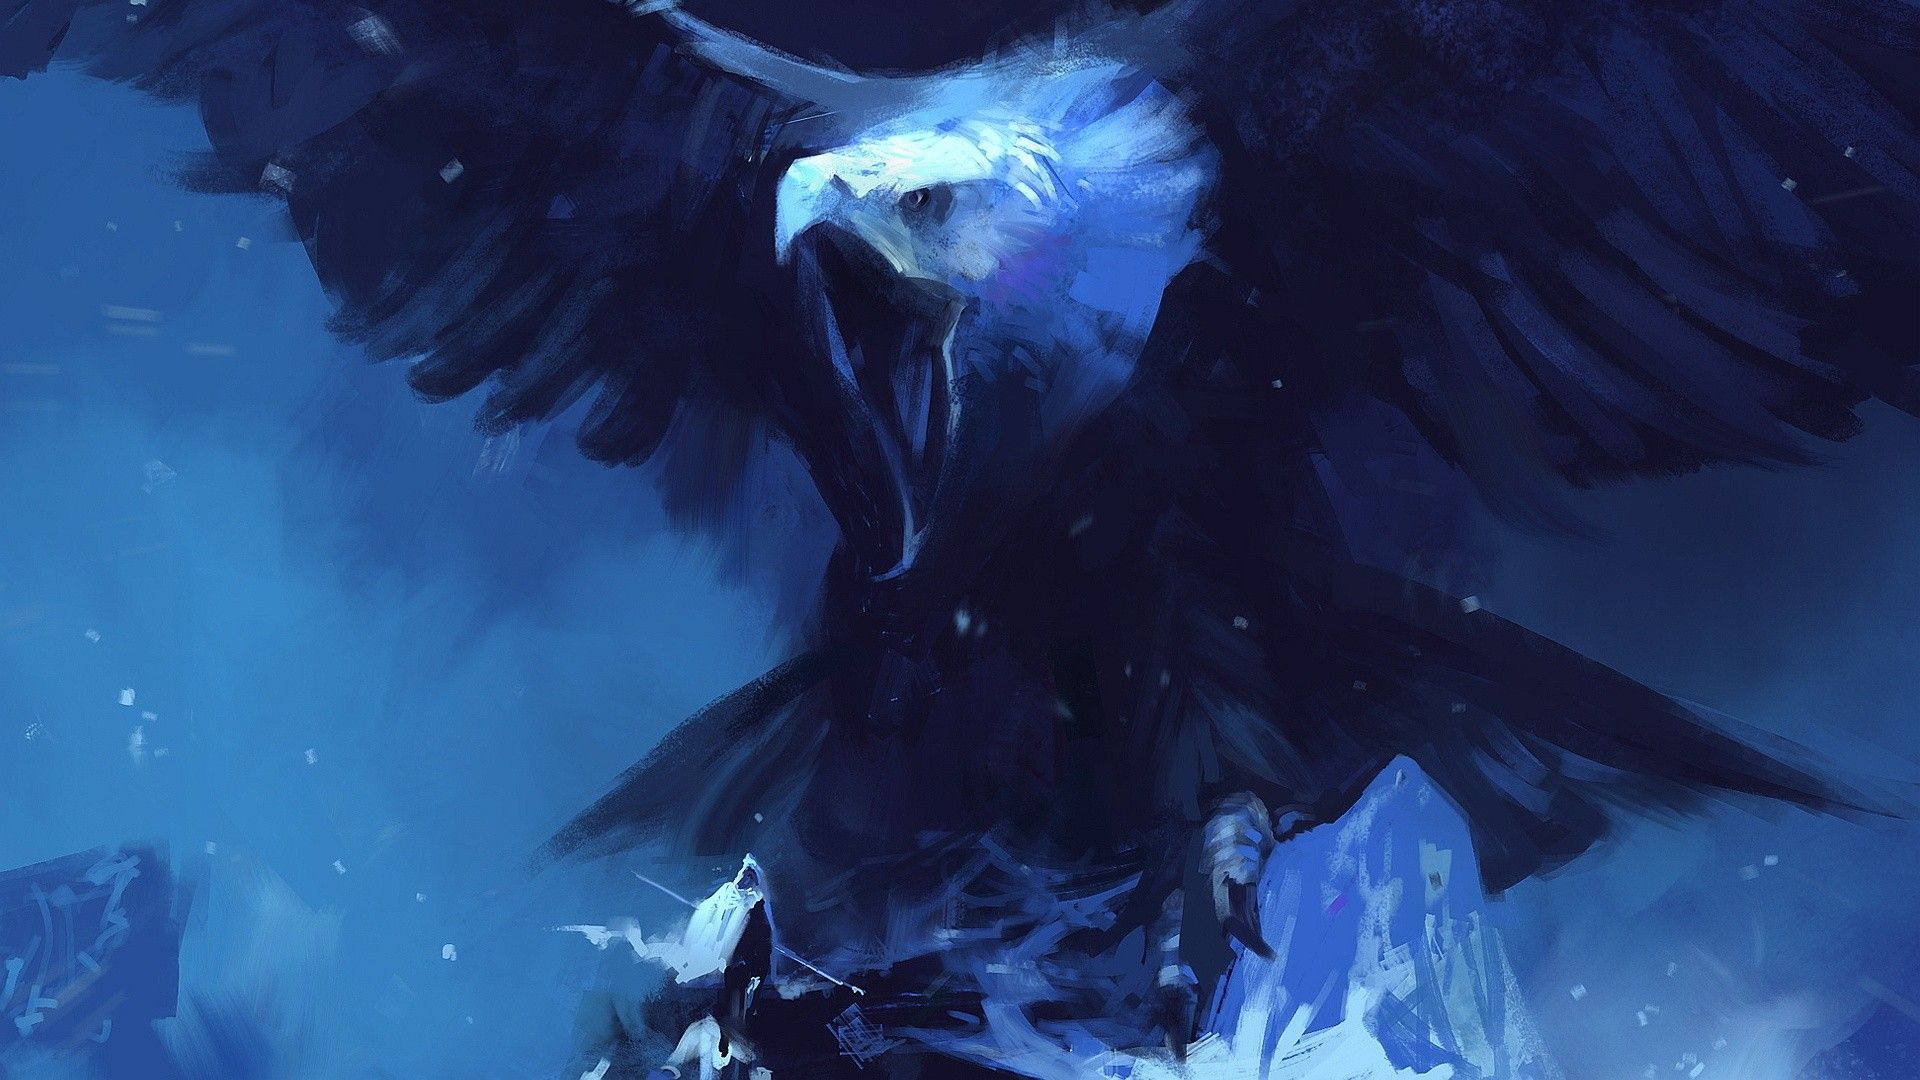 eagles artwork / Wallbase.cc. Eagle wallpaper, Giant eagle, Eagle artwork